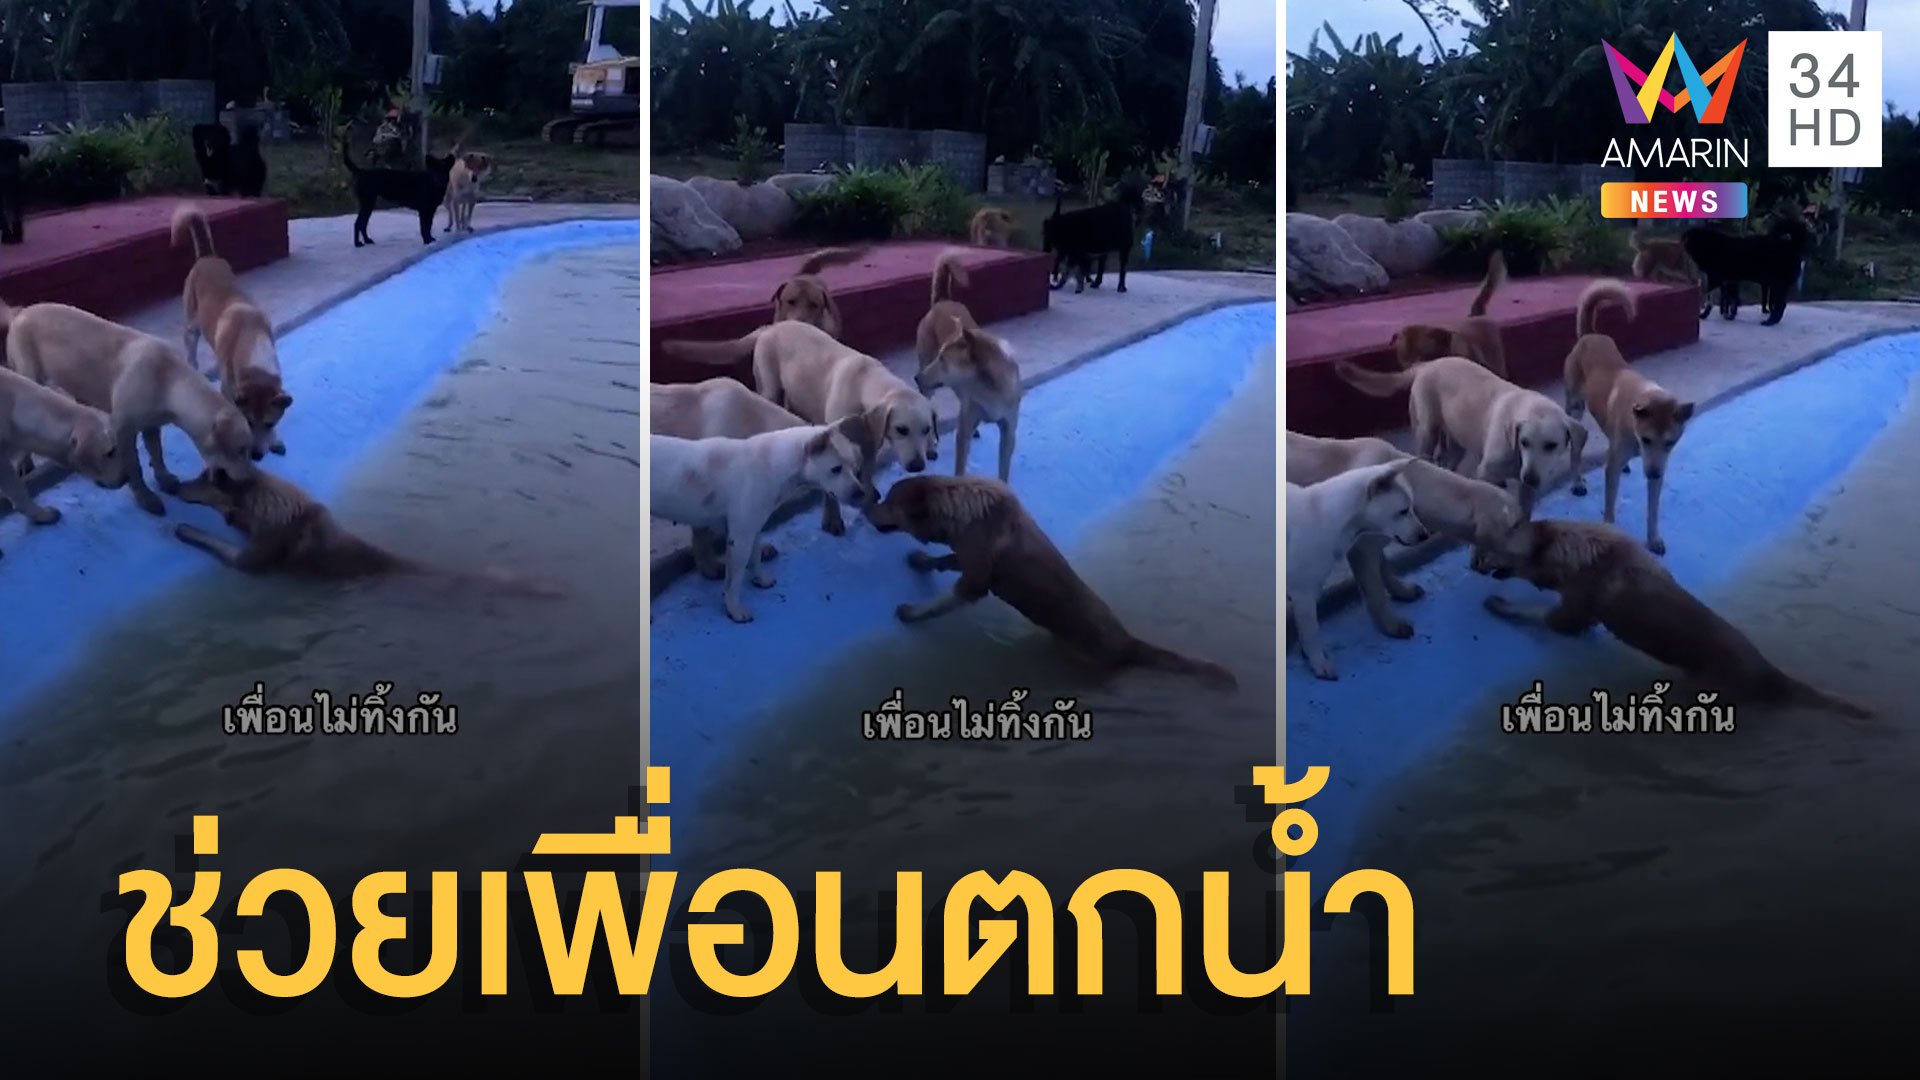 เอ็นดูน้องหมา! รุมช่วยเพื่อนตกสระน้ำ | ข่าวอรุณอมรินทร์ | 28 ก.พ. 65 | AMARIN TVHD34